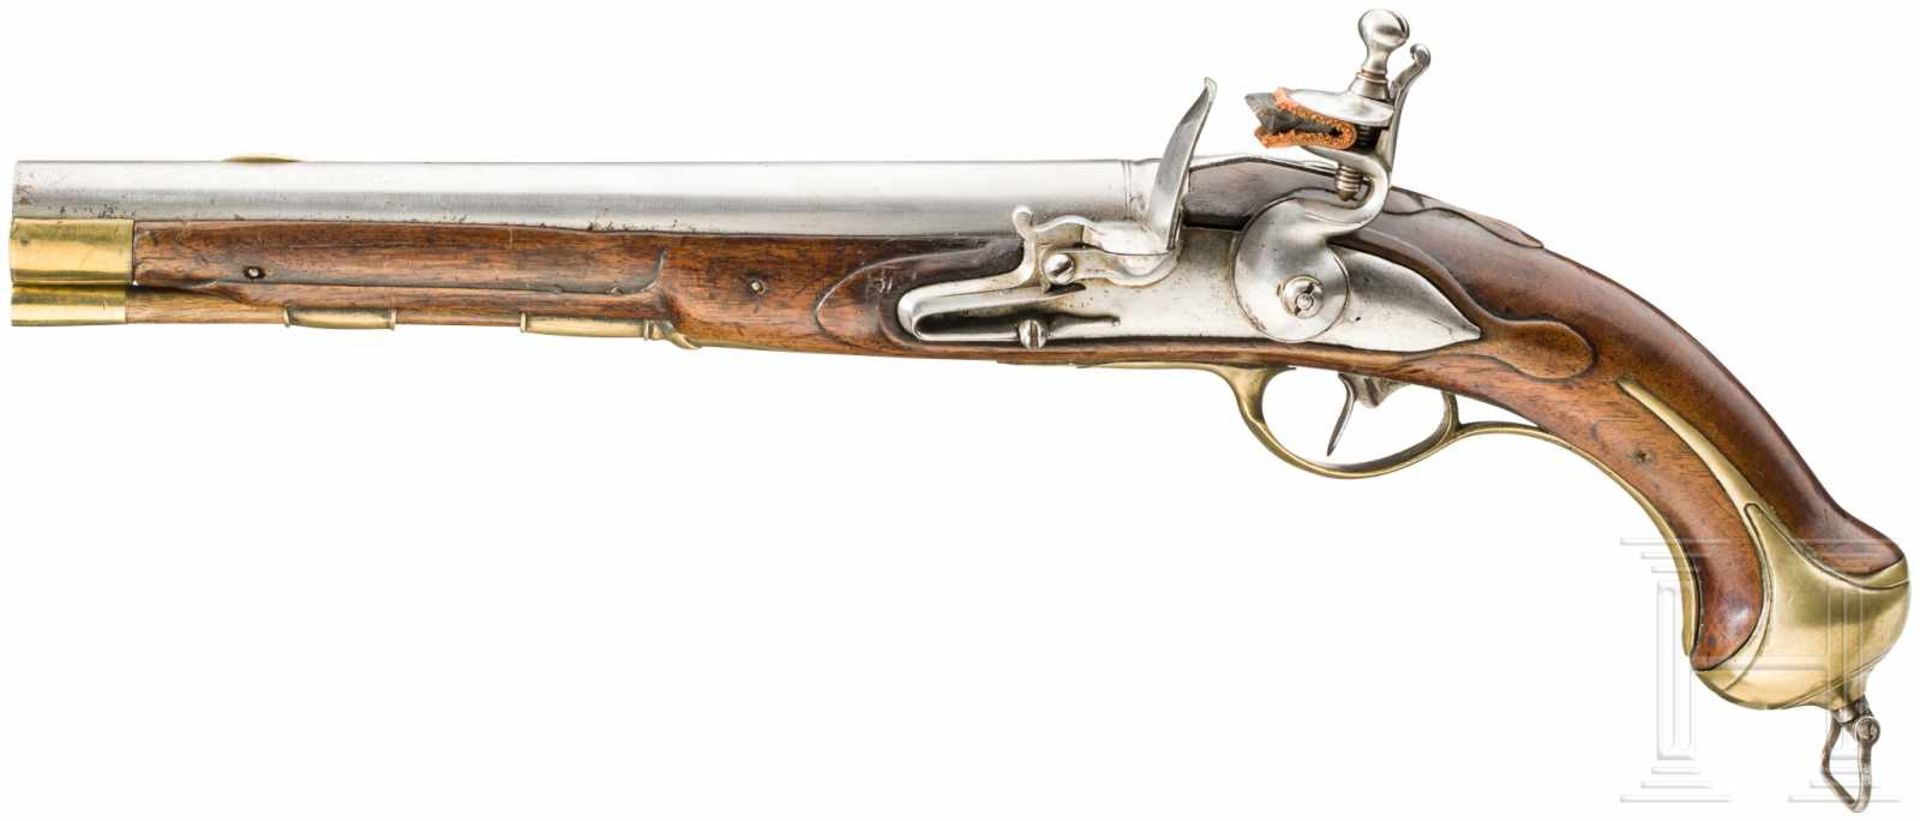 Kavalleriepistole M 1763/67 mit linkem SchlossRunder und glatter Lauf im Kaliber 19 mm mit